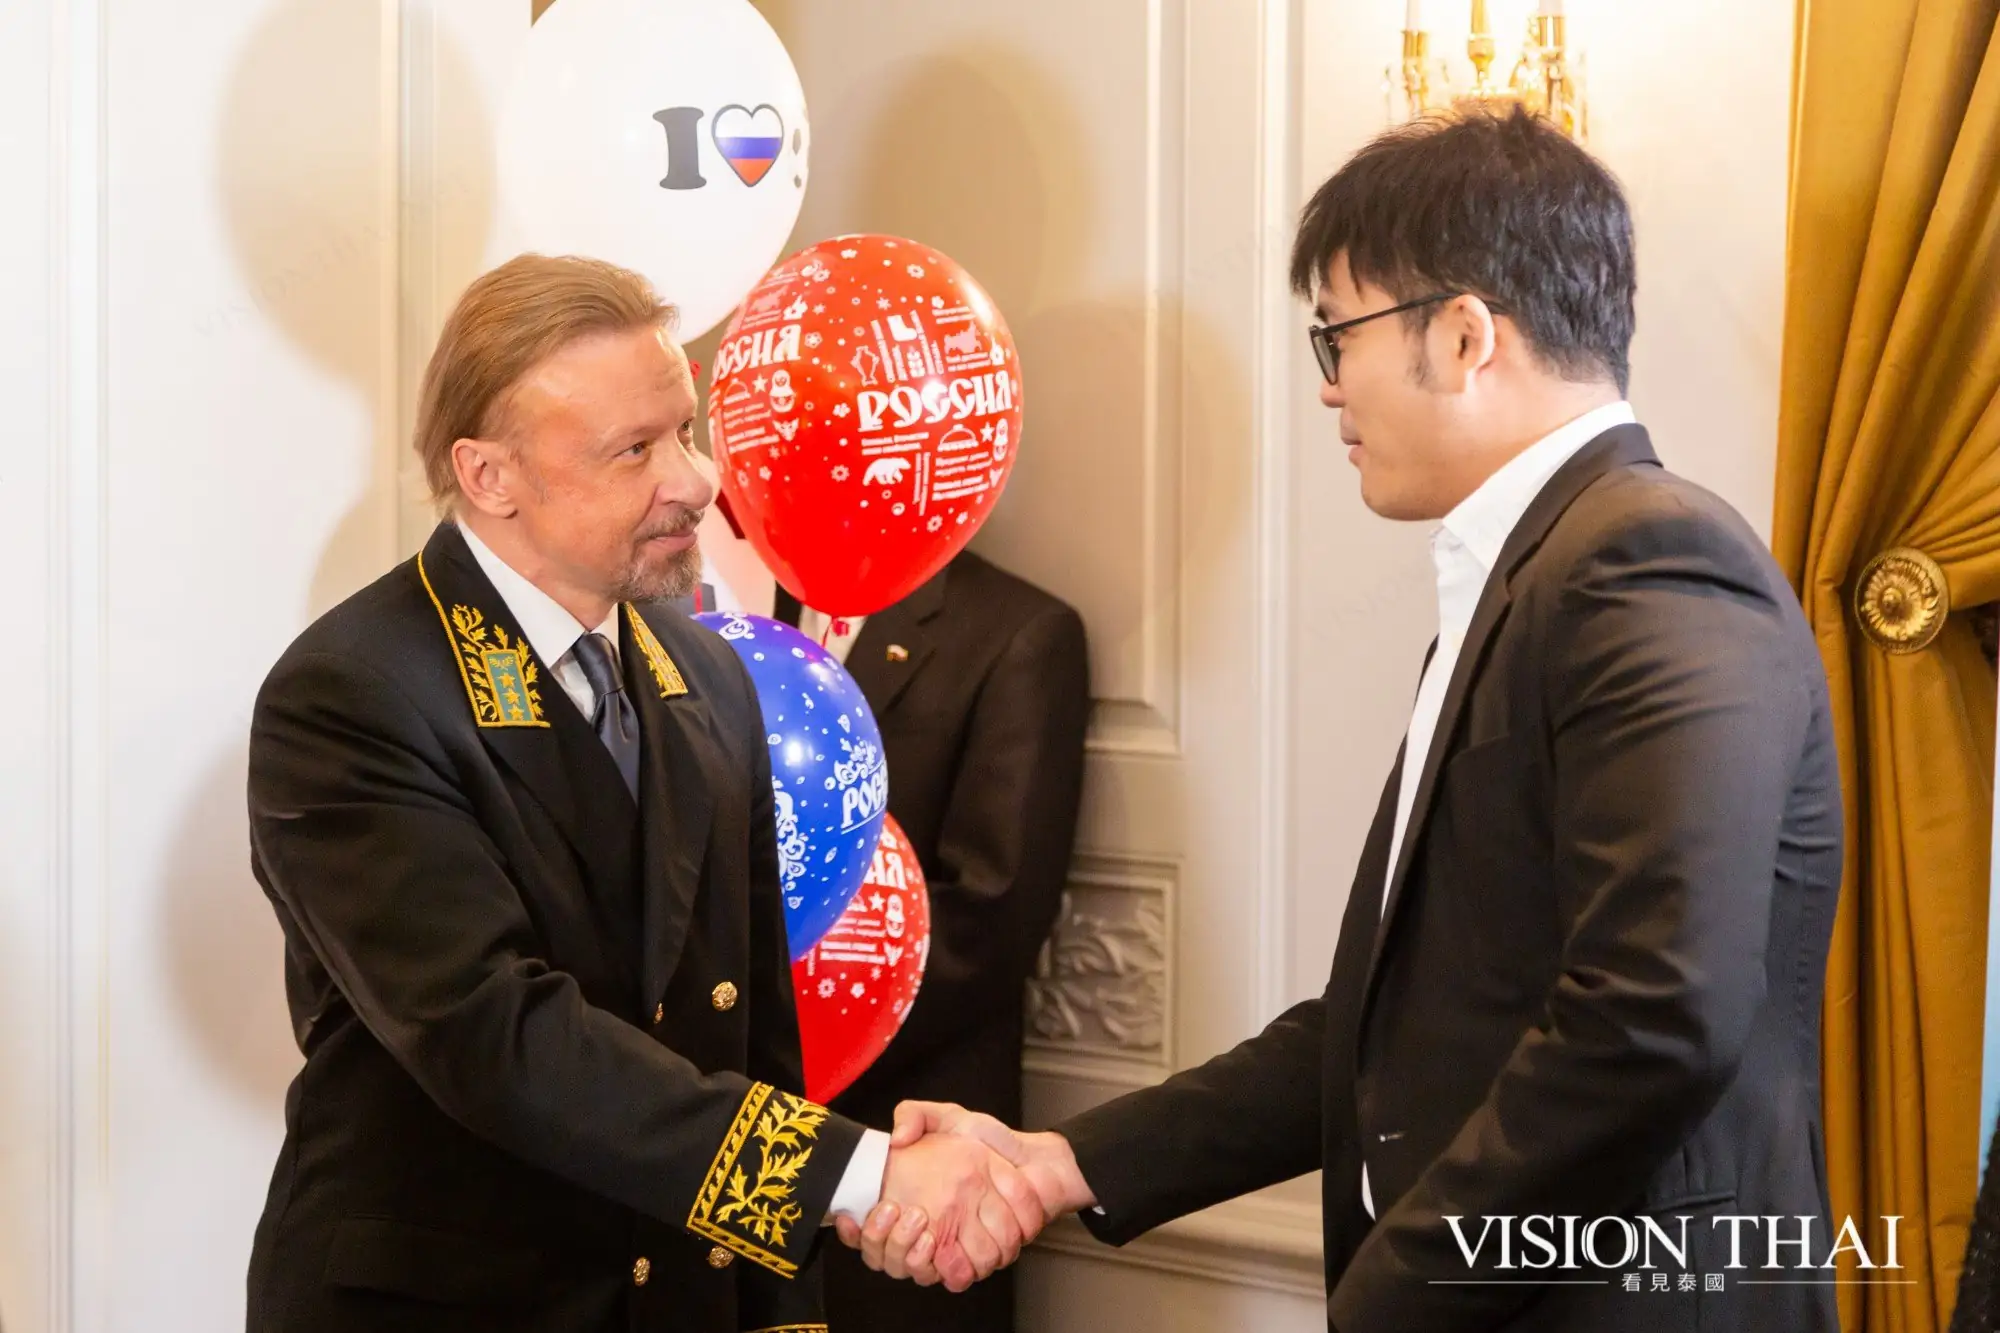 俄羅斯 國慶 俄羅斯駐泰國大使館 俄羅斯駐泰國大使 H.E. Dr. Kirill Barsky 俄泰友好